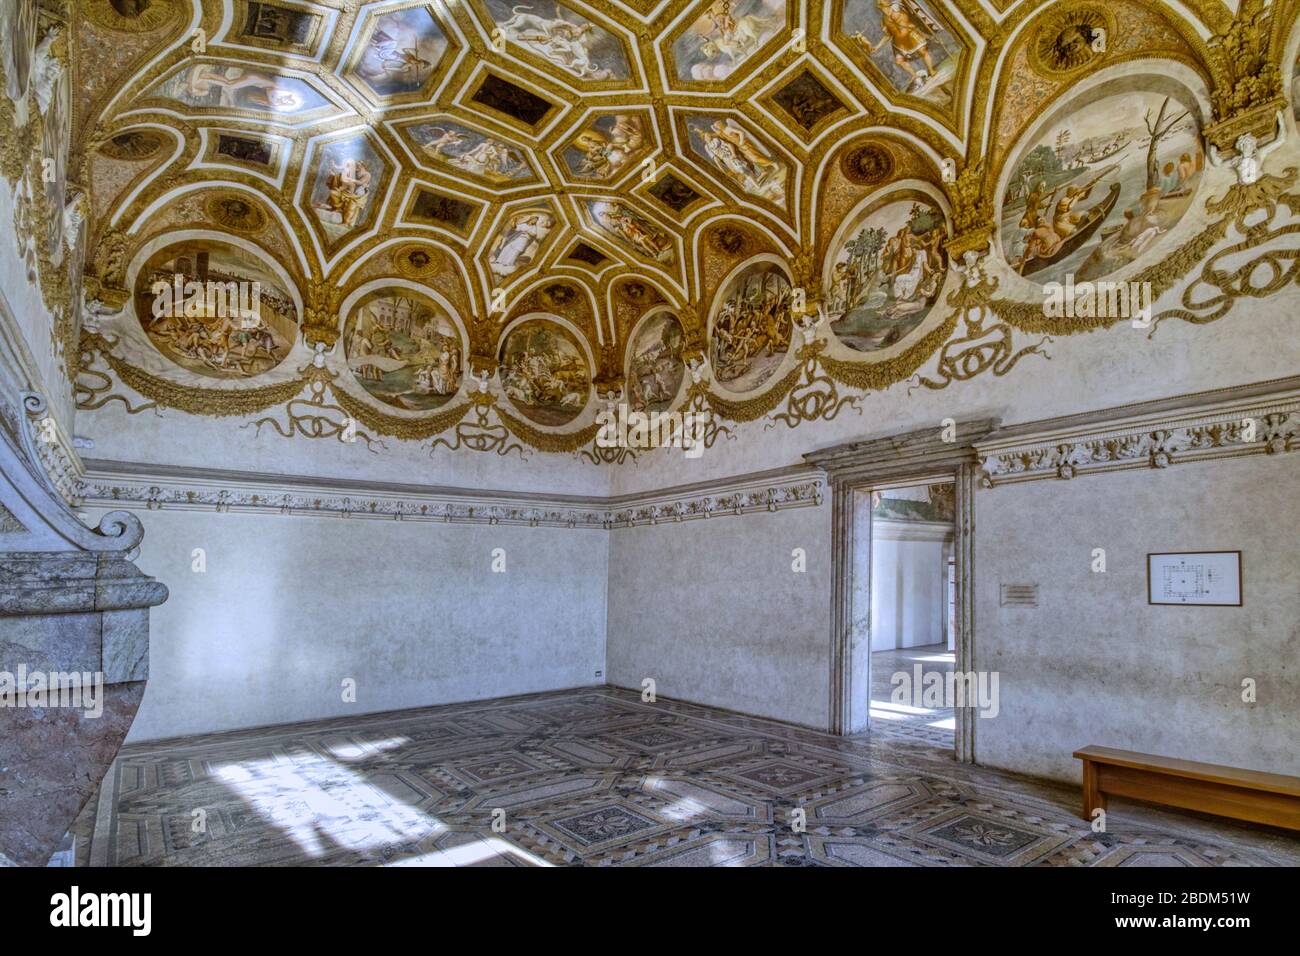 Palazzo Te (16. Jahrhundert) Mantua, Italien. Die Kammer der Winde verdankt ihren Namen den Masken der personifizierten Winde im unteren Teil des Gewölbes. Stockfoto